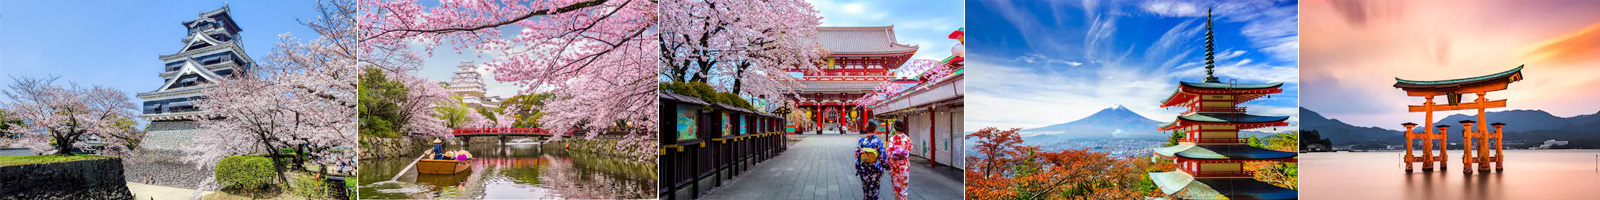 Tour du lịch Nhật Bản giá rẻ 2021: Giá trọn gói giảm 10-15%